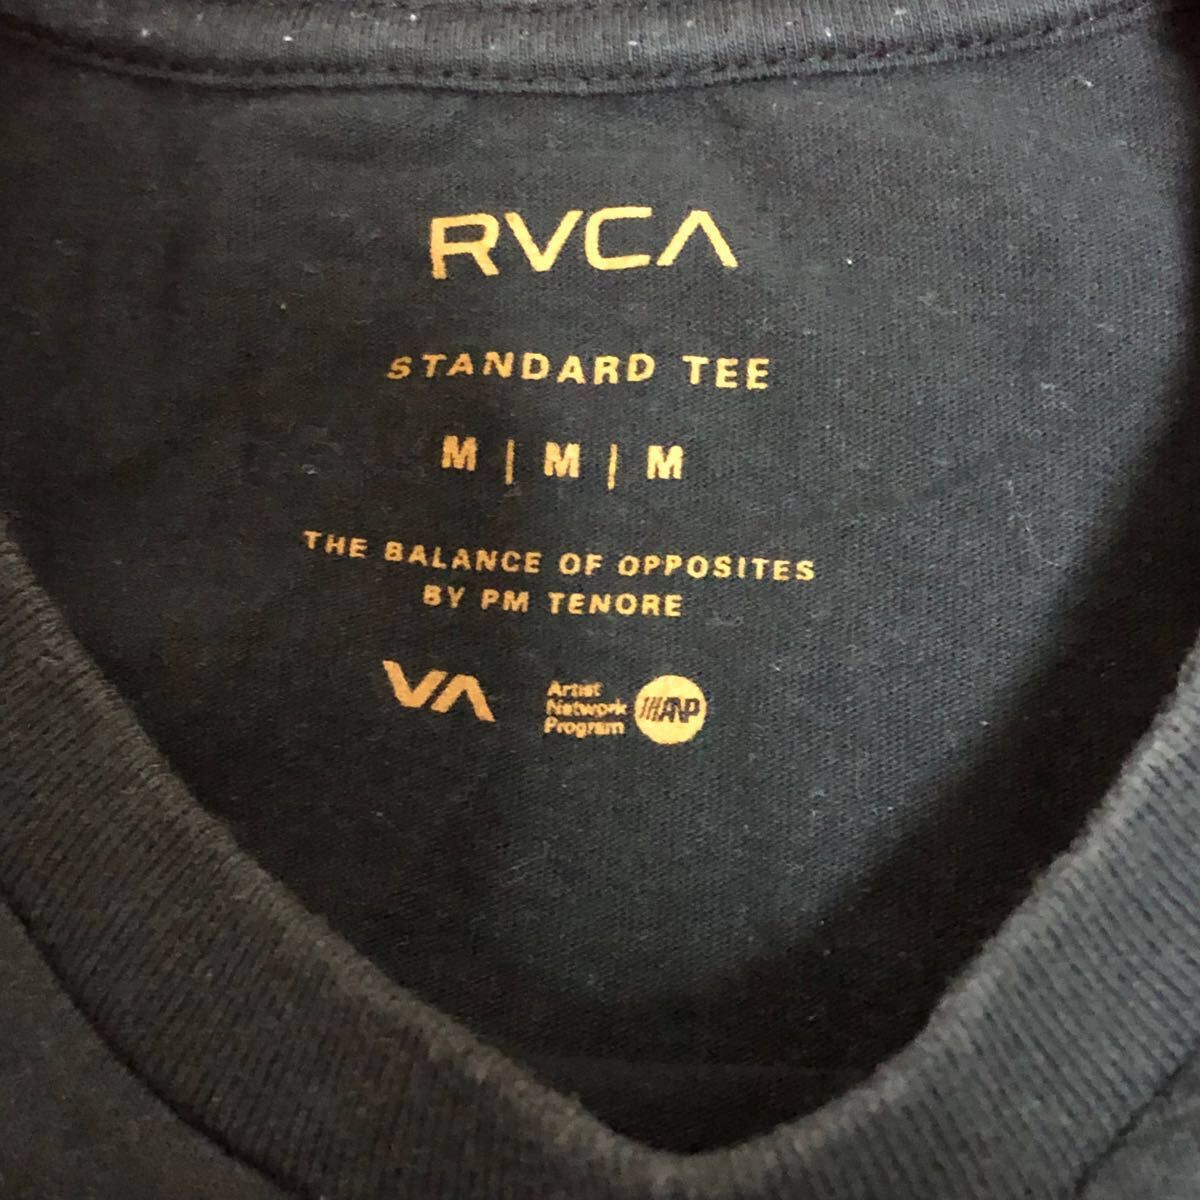 RVCA Tシャツ